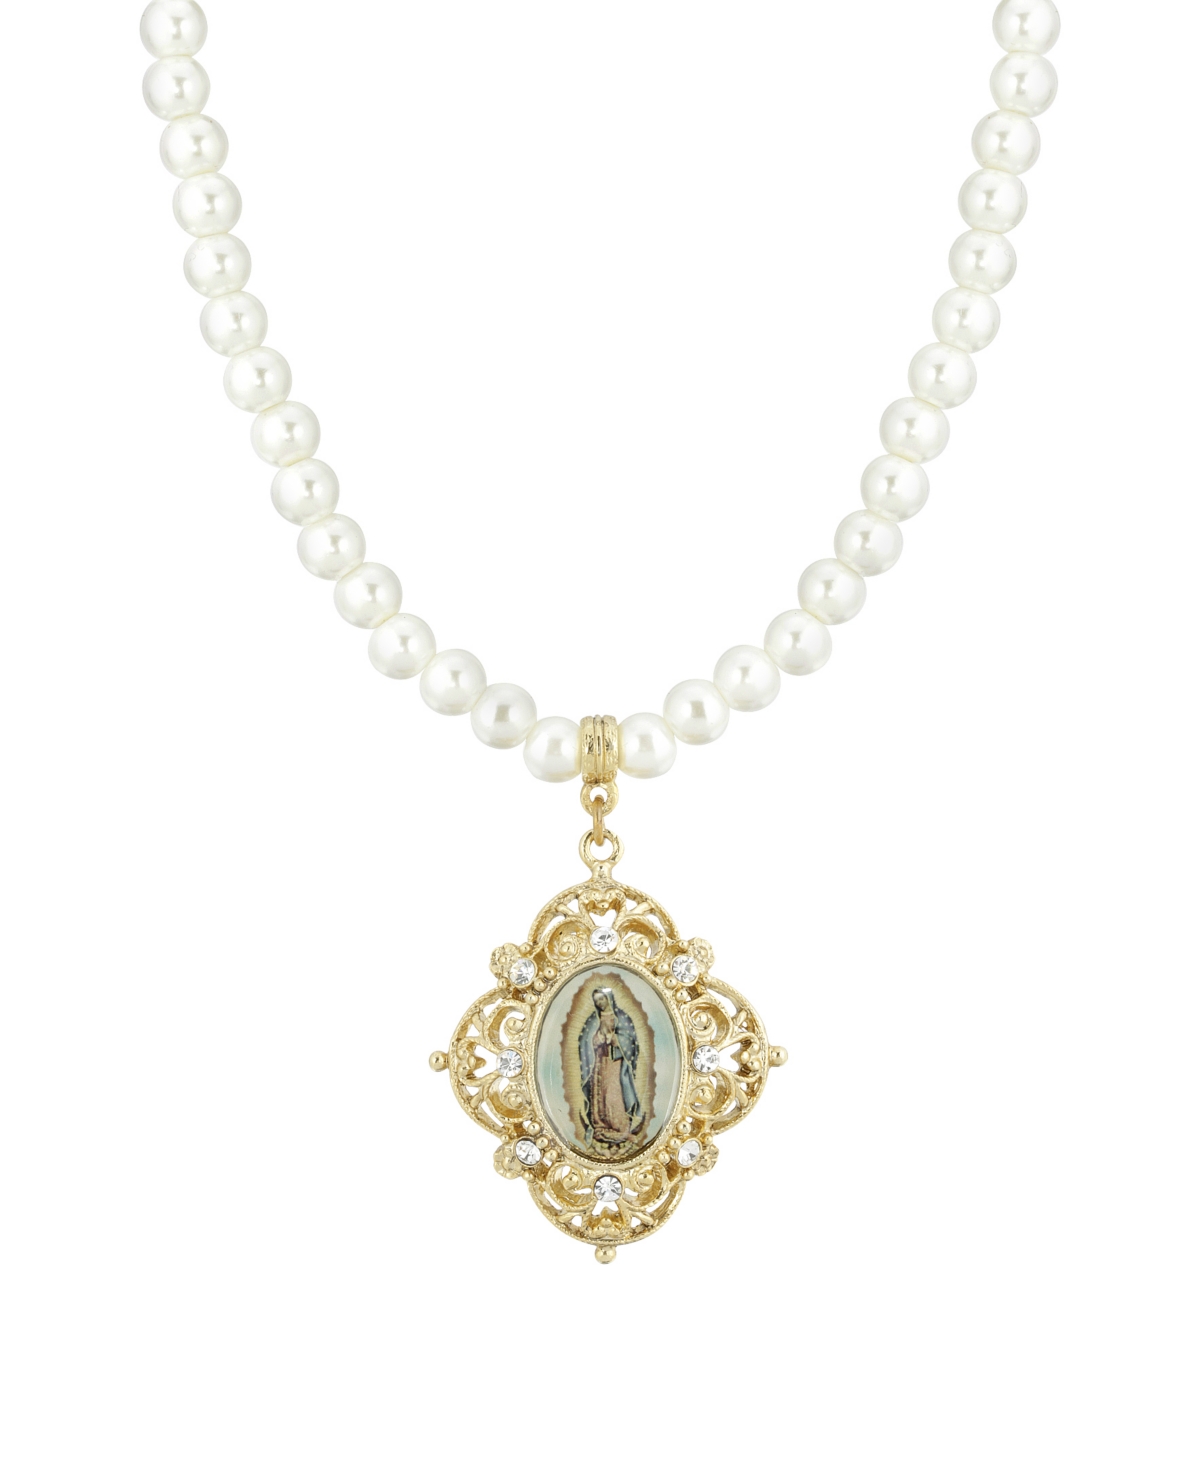 Gold-Tone Imitation Pearl Strandage Mary Decal Pendant 15" Adjustable Necklace - White